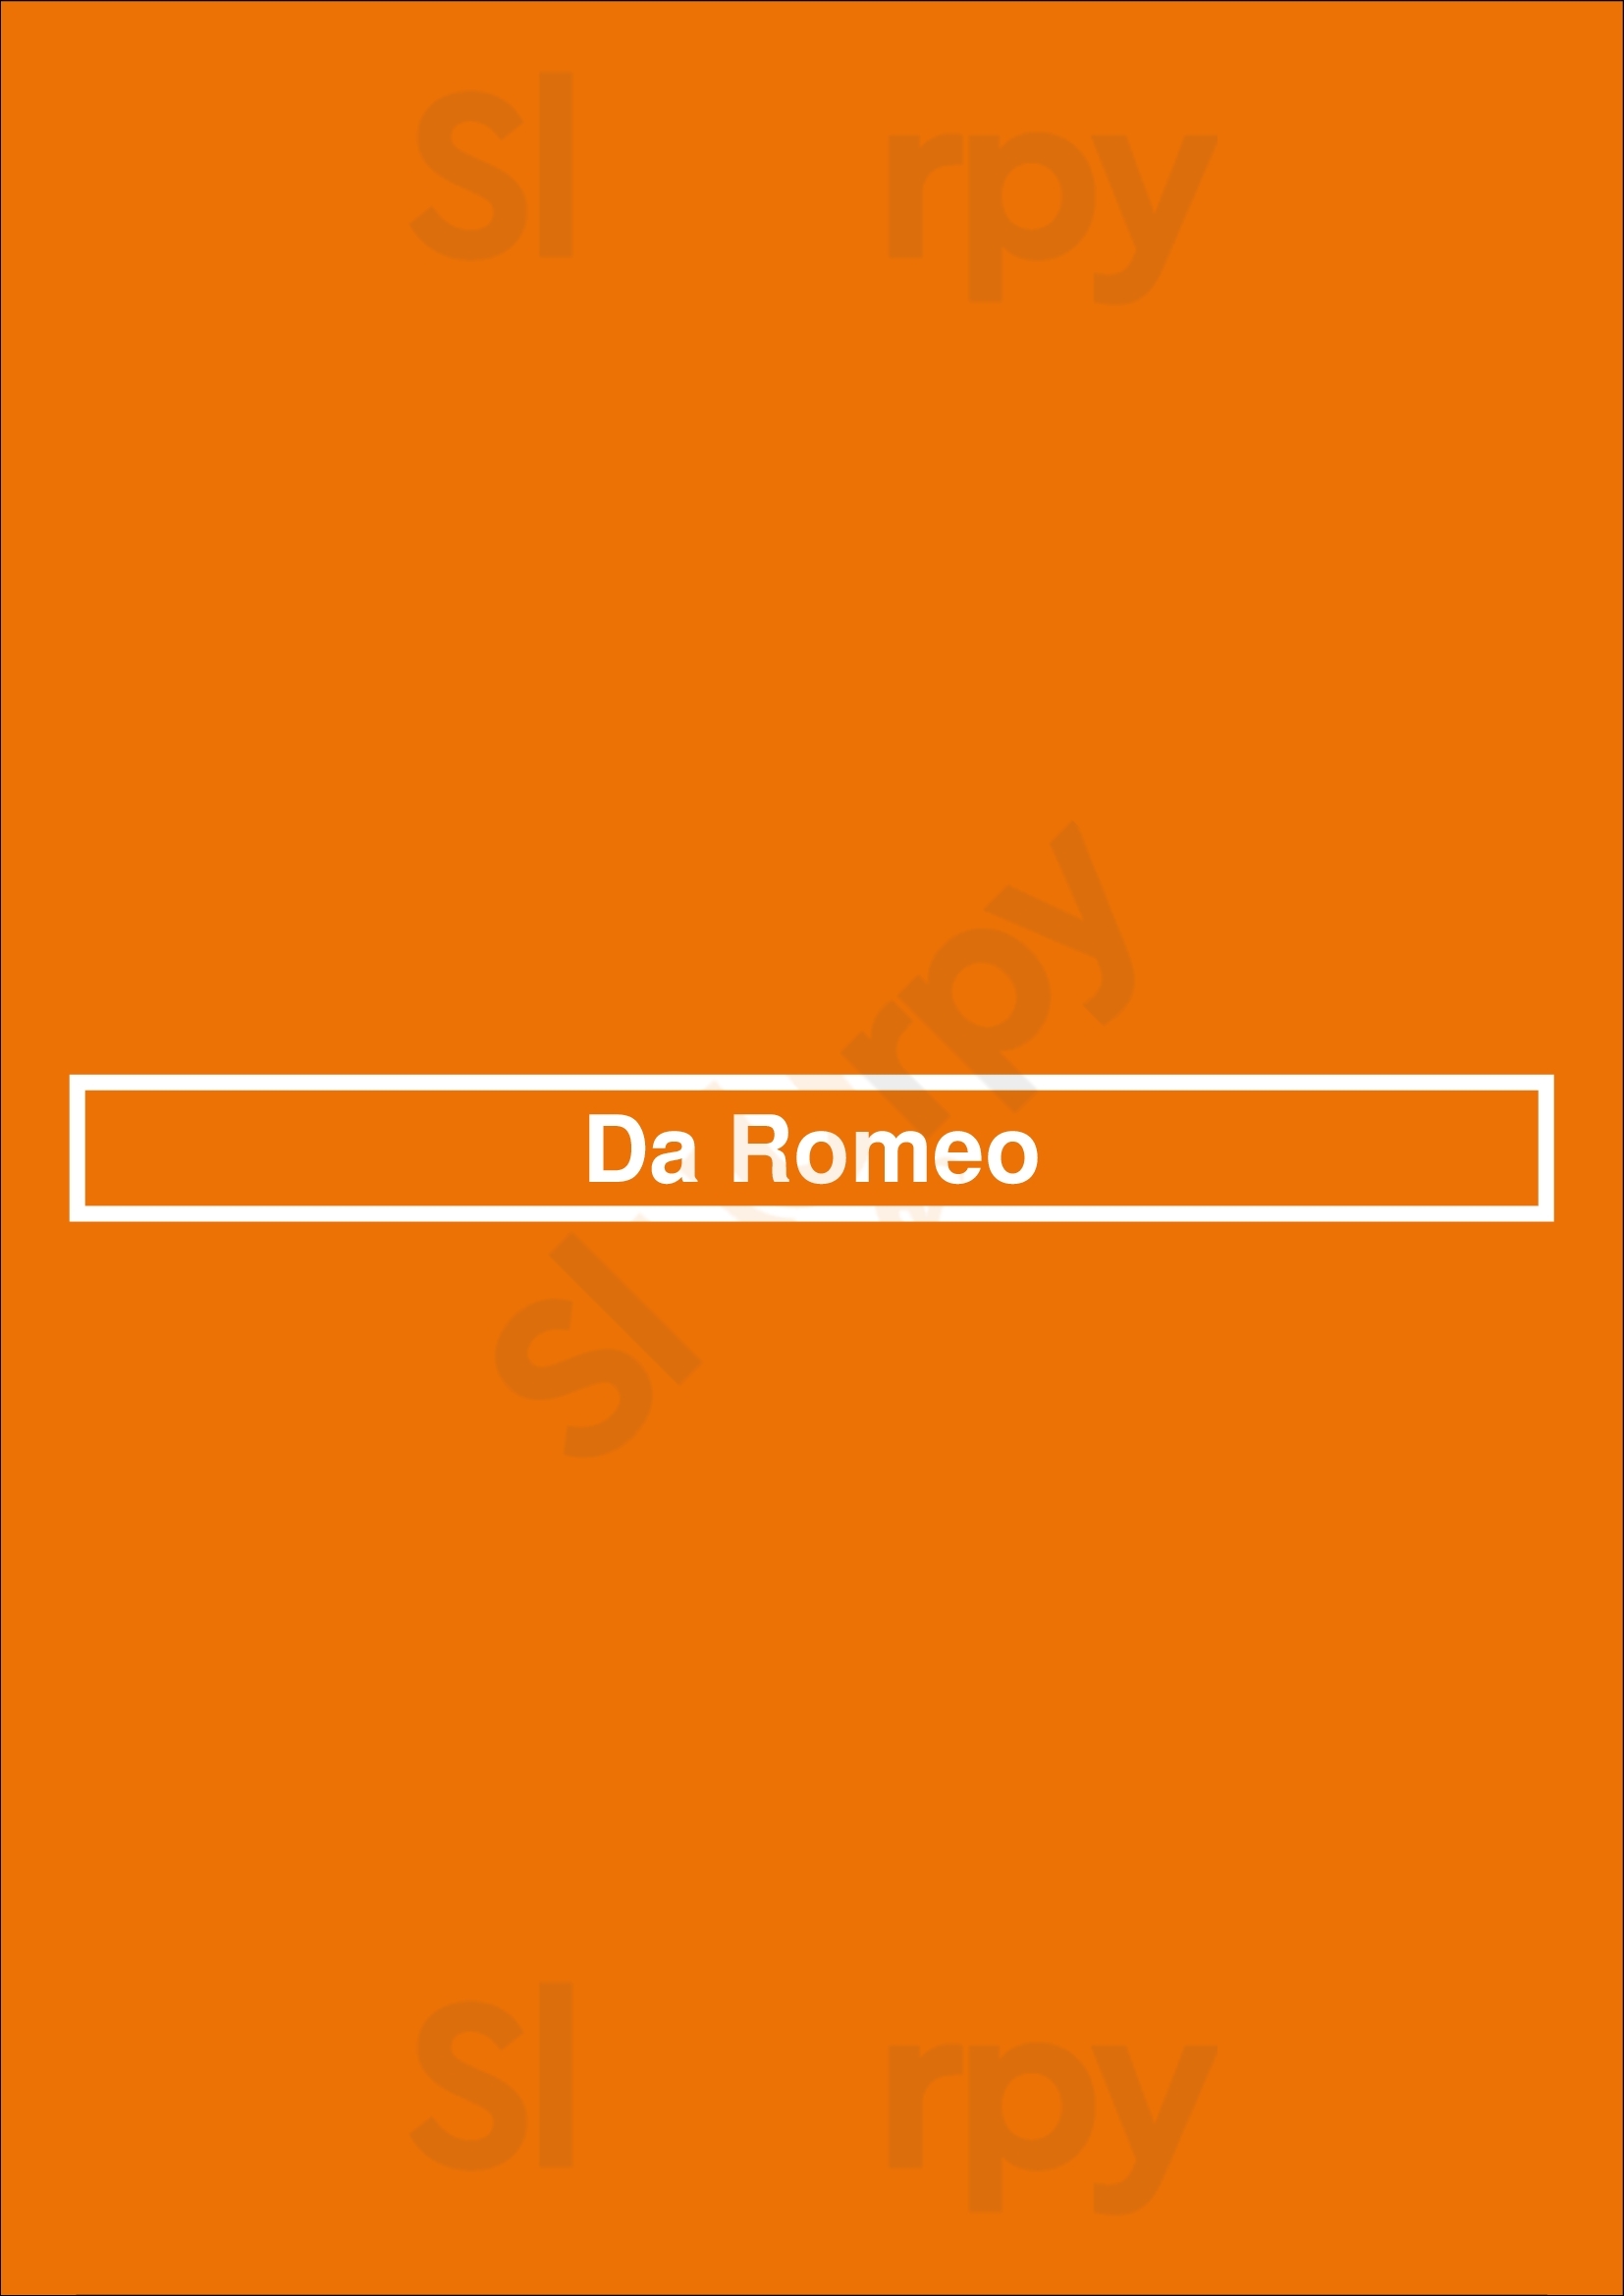 Da Romeo Oudenaarde Menu - 1